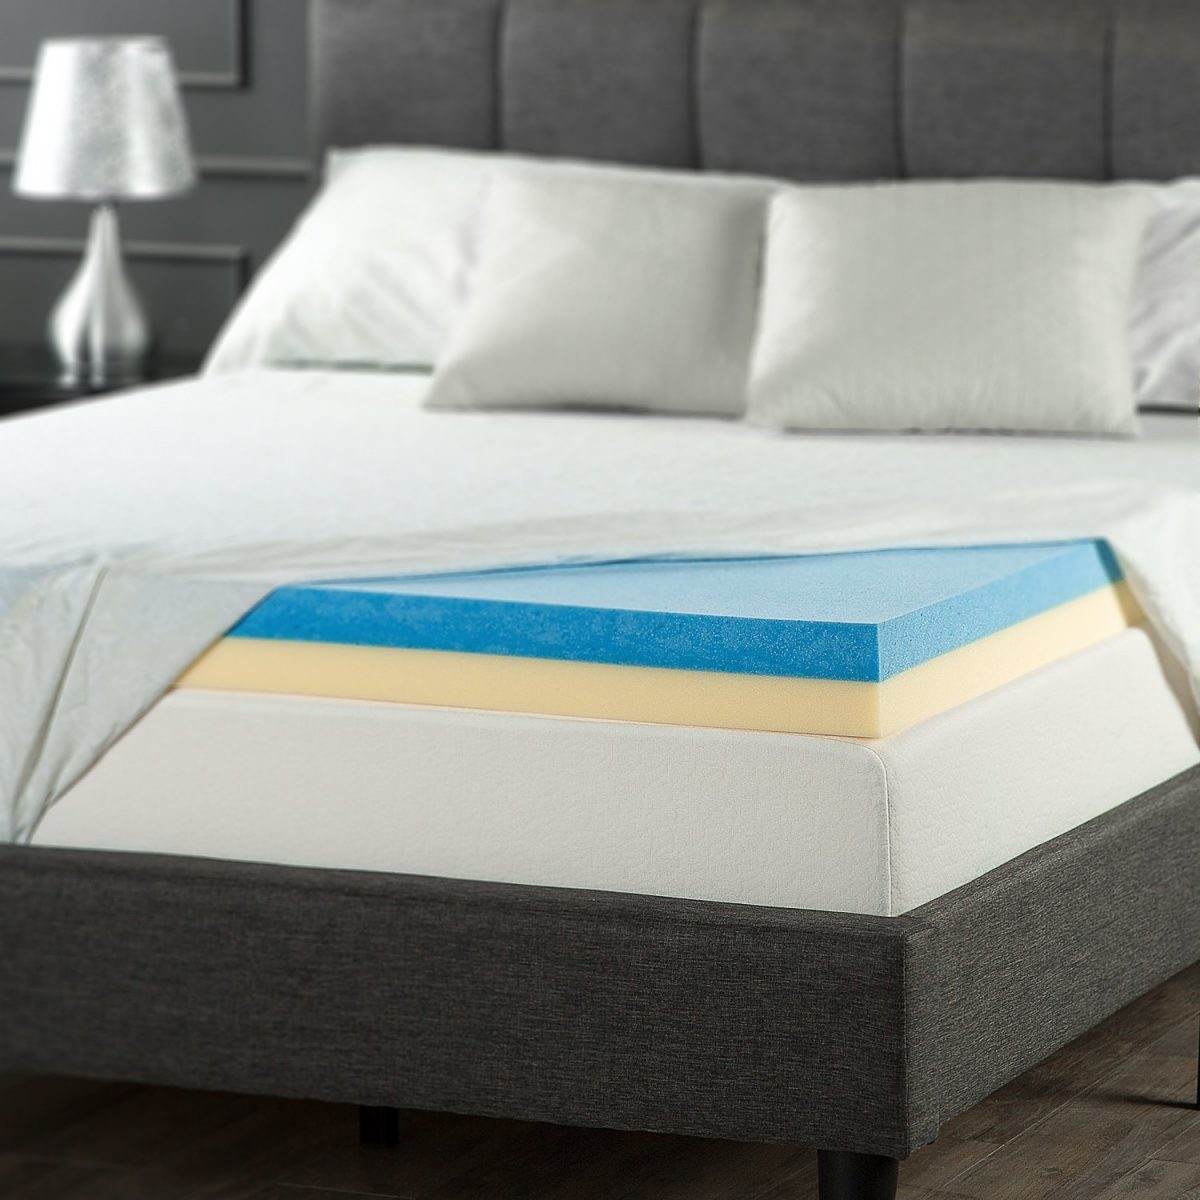 heat cooling mattress pads